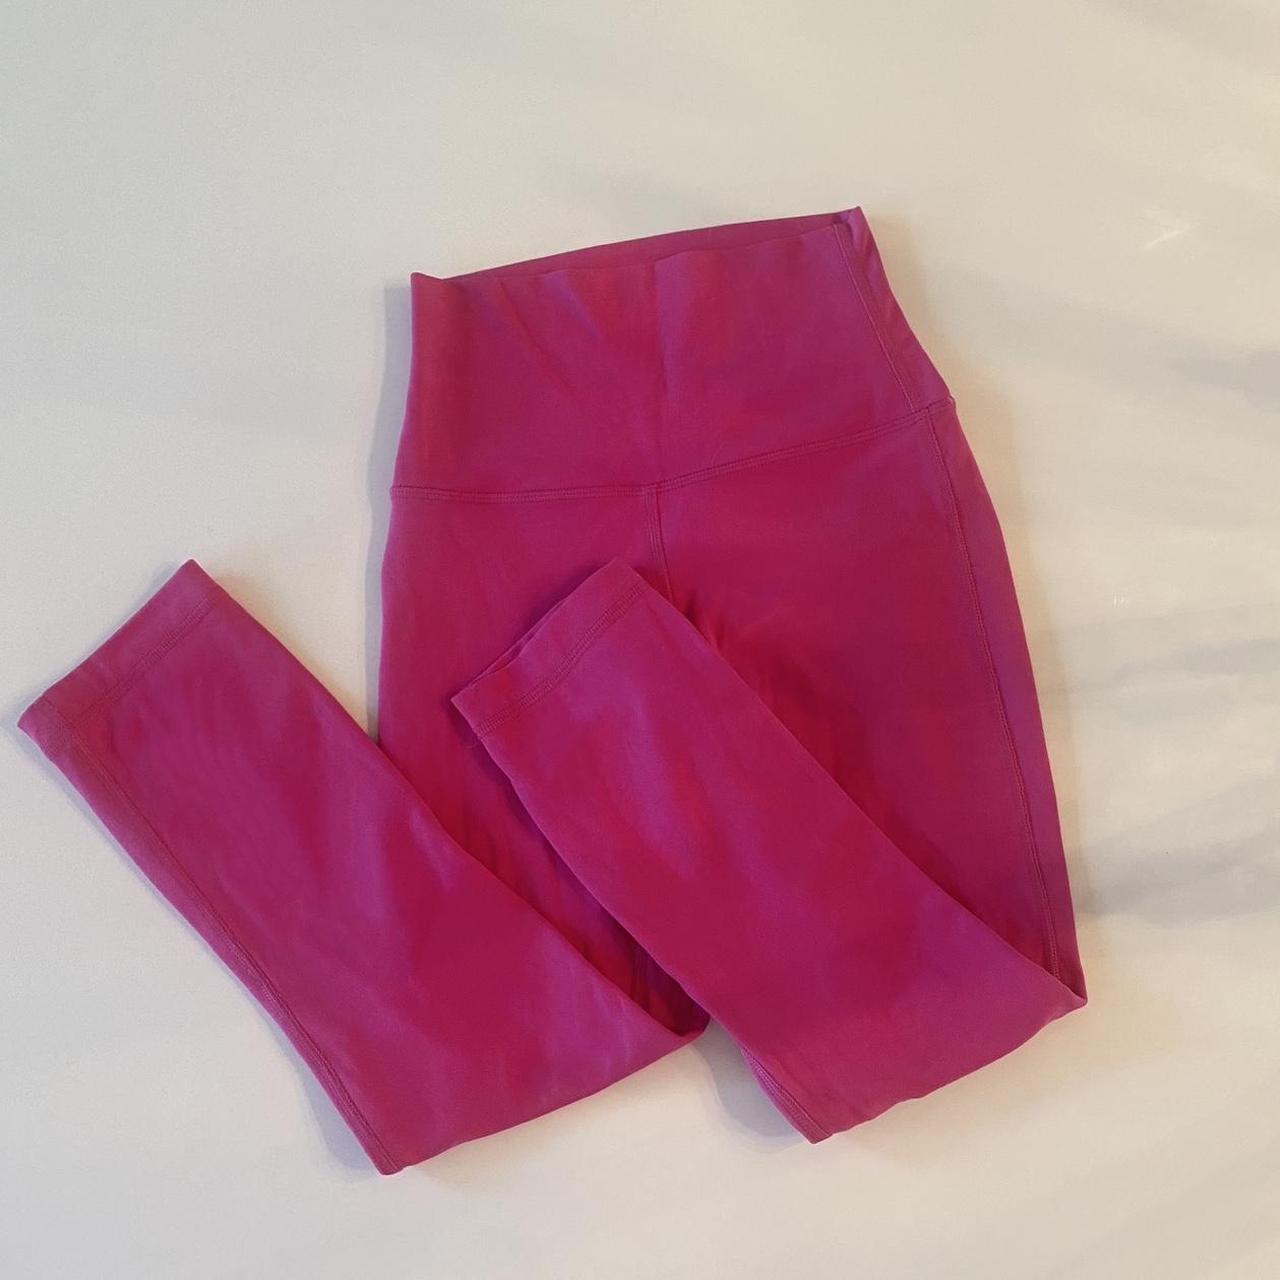 25” Lululemon sonic pink align leggings - Depop